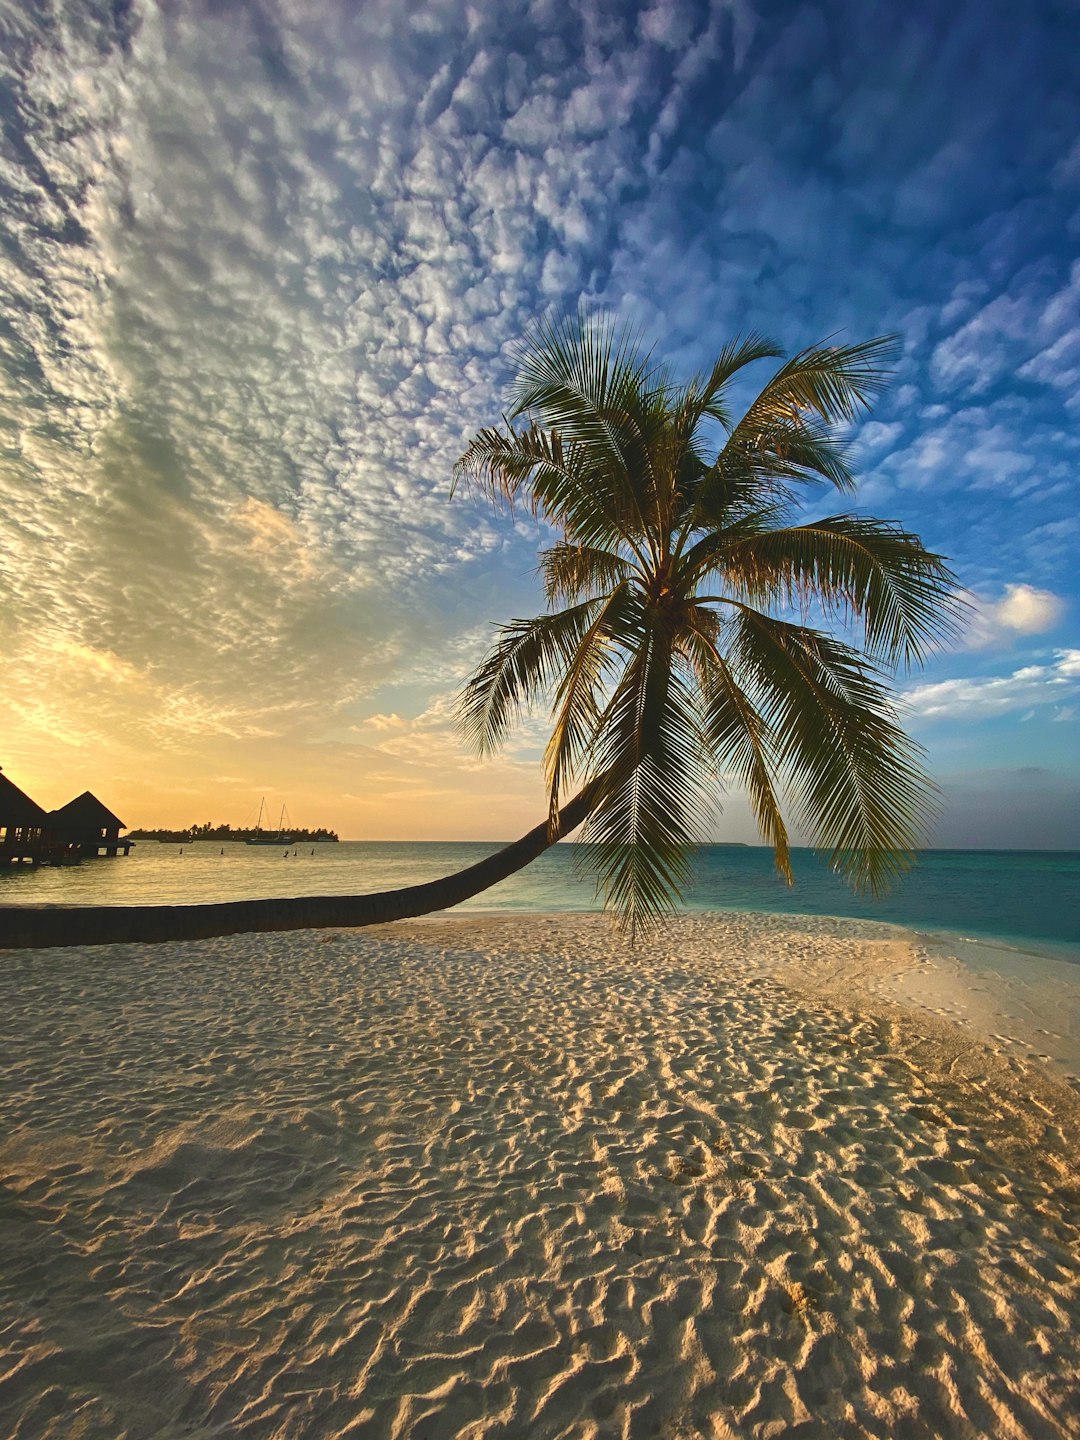 Beach photo spot Maldive Islands Kudahuvadhoo